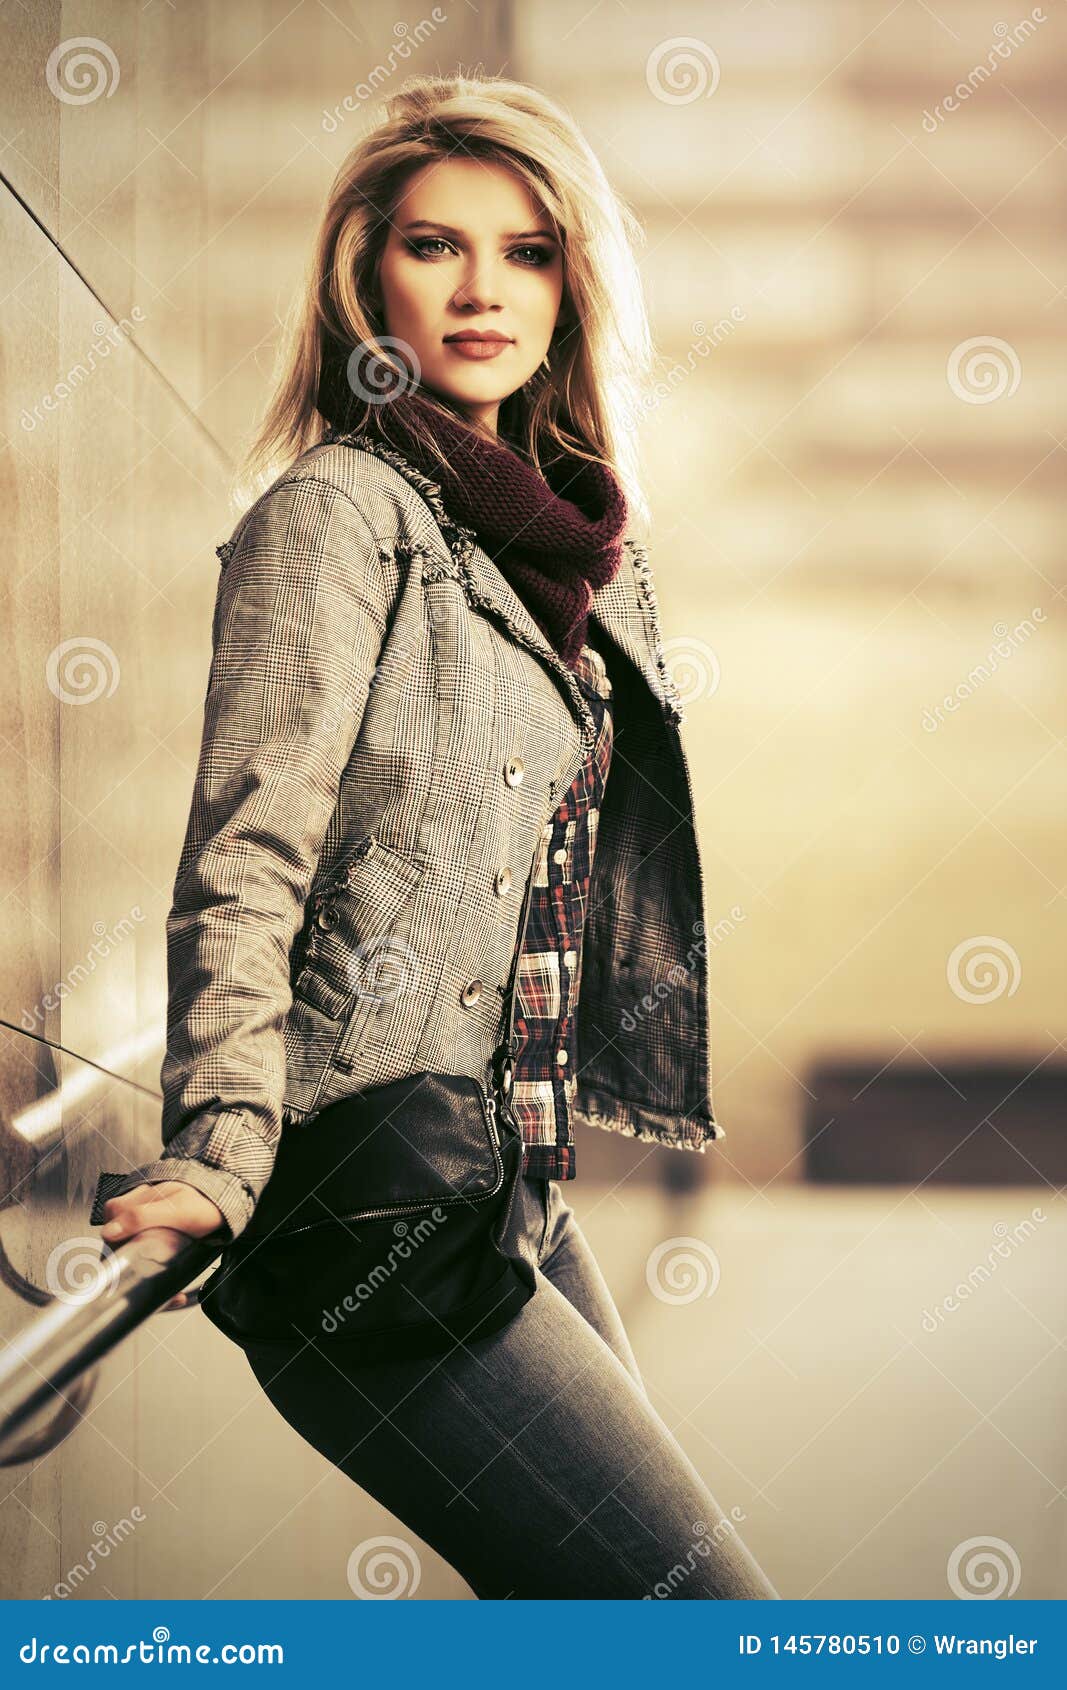 Mujer Rubia De La Moda Joven Que Lleva Chaqueta Comprobada De La Tela Escocesa En La Calle De La Ciudad Foto de archivo - Imagen de manera, vaqueros: 145780510